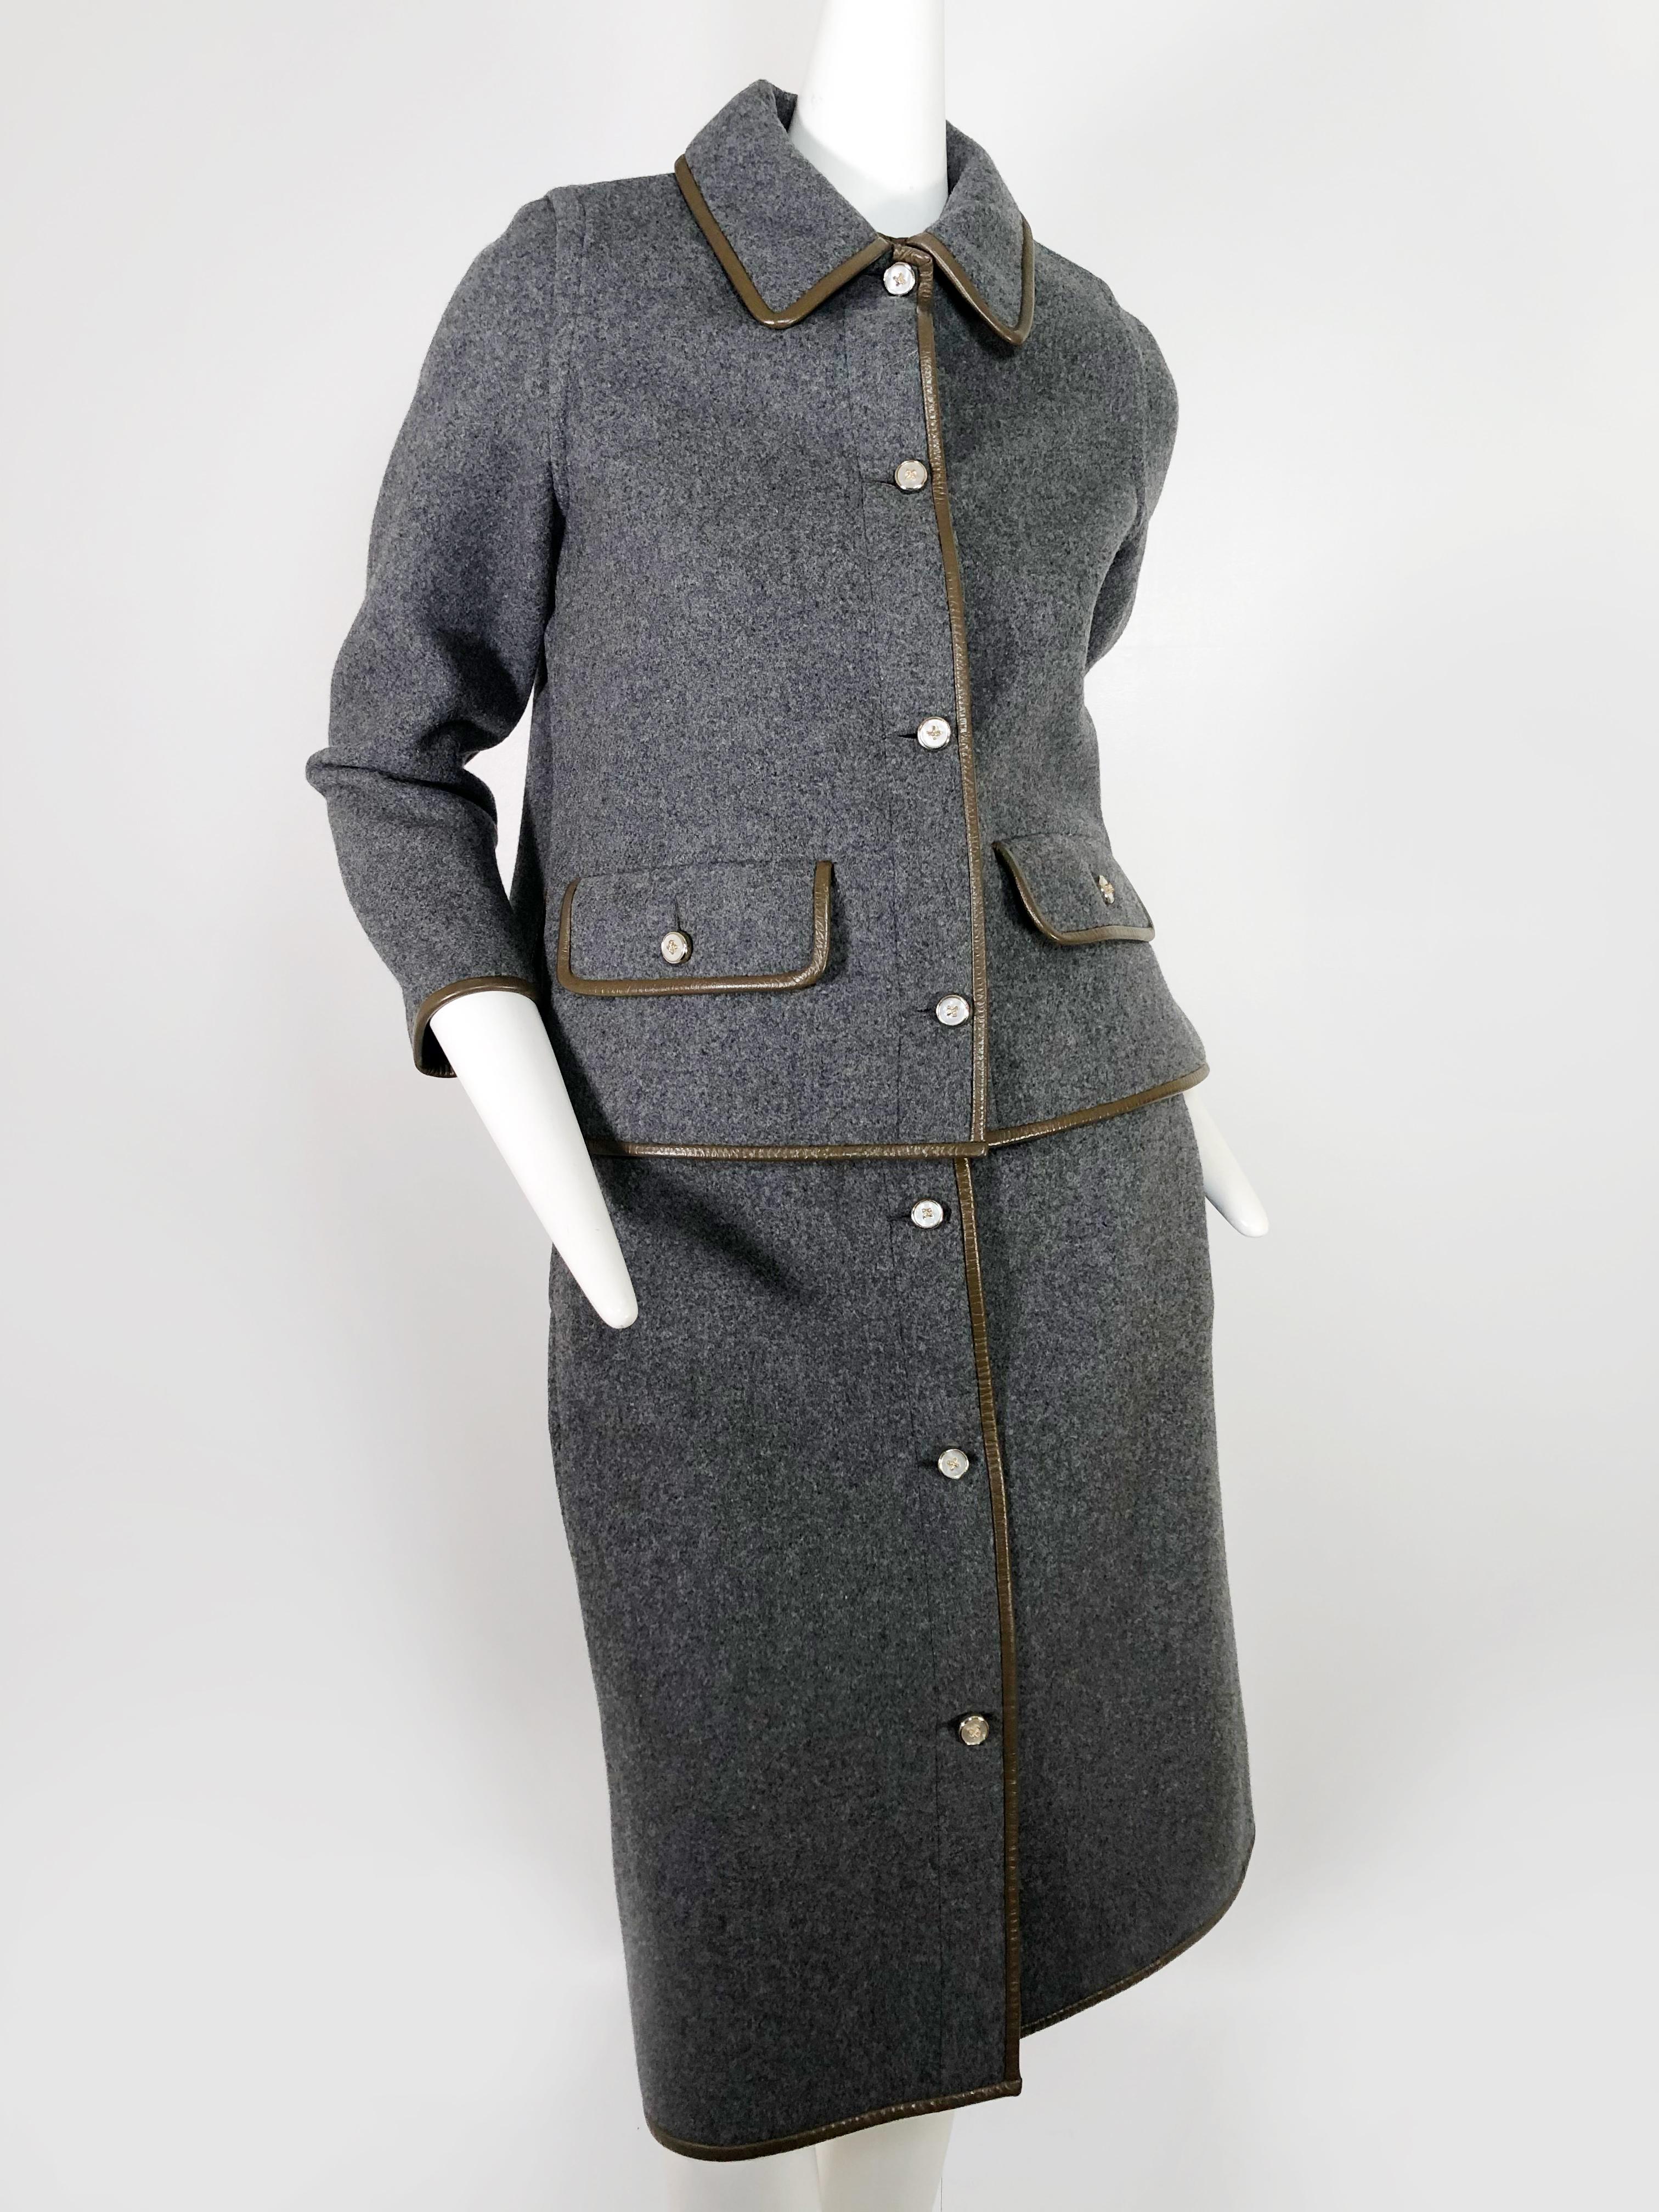 Noir Tailleur jupe en laine grise avec bordure en cuir marron Sills by Bonnie Cashin, années 1960 en vente